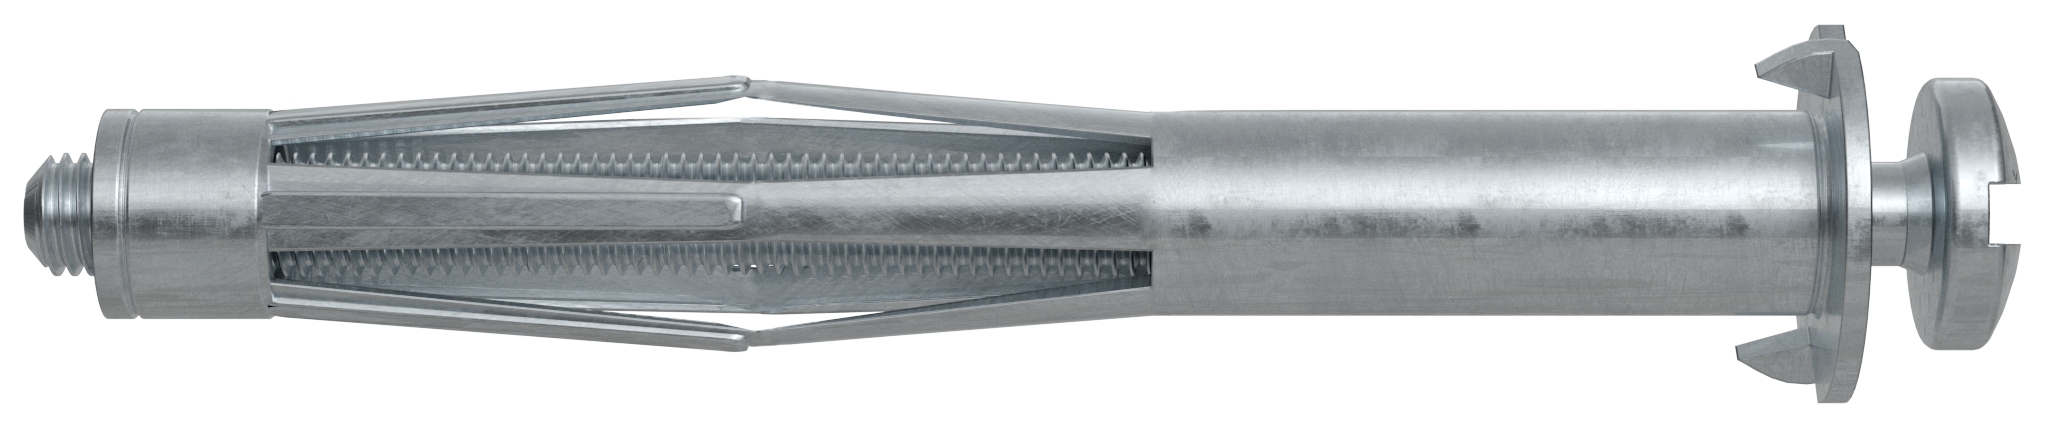 Fischer HM 5 x 65 S B. Der vielseitige Hohlraumdübel aus Metall mit metrischer Schraube.